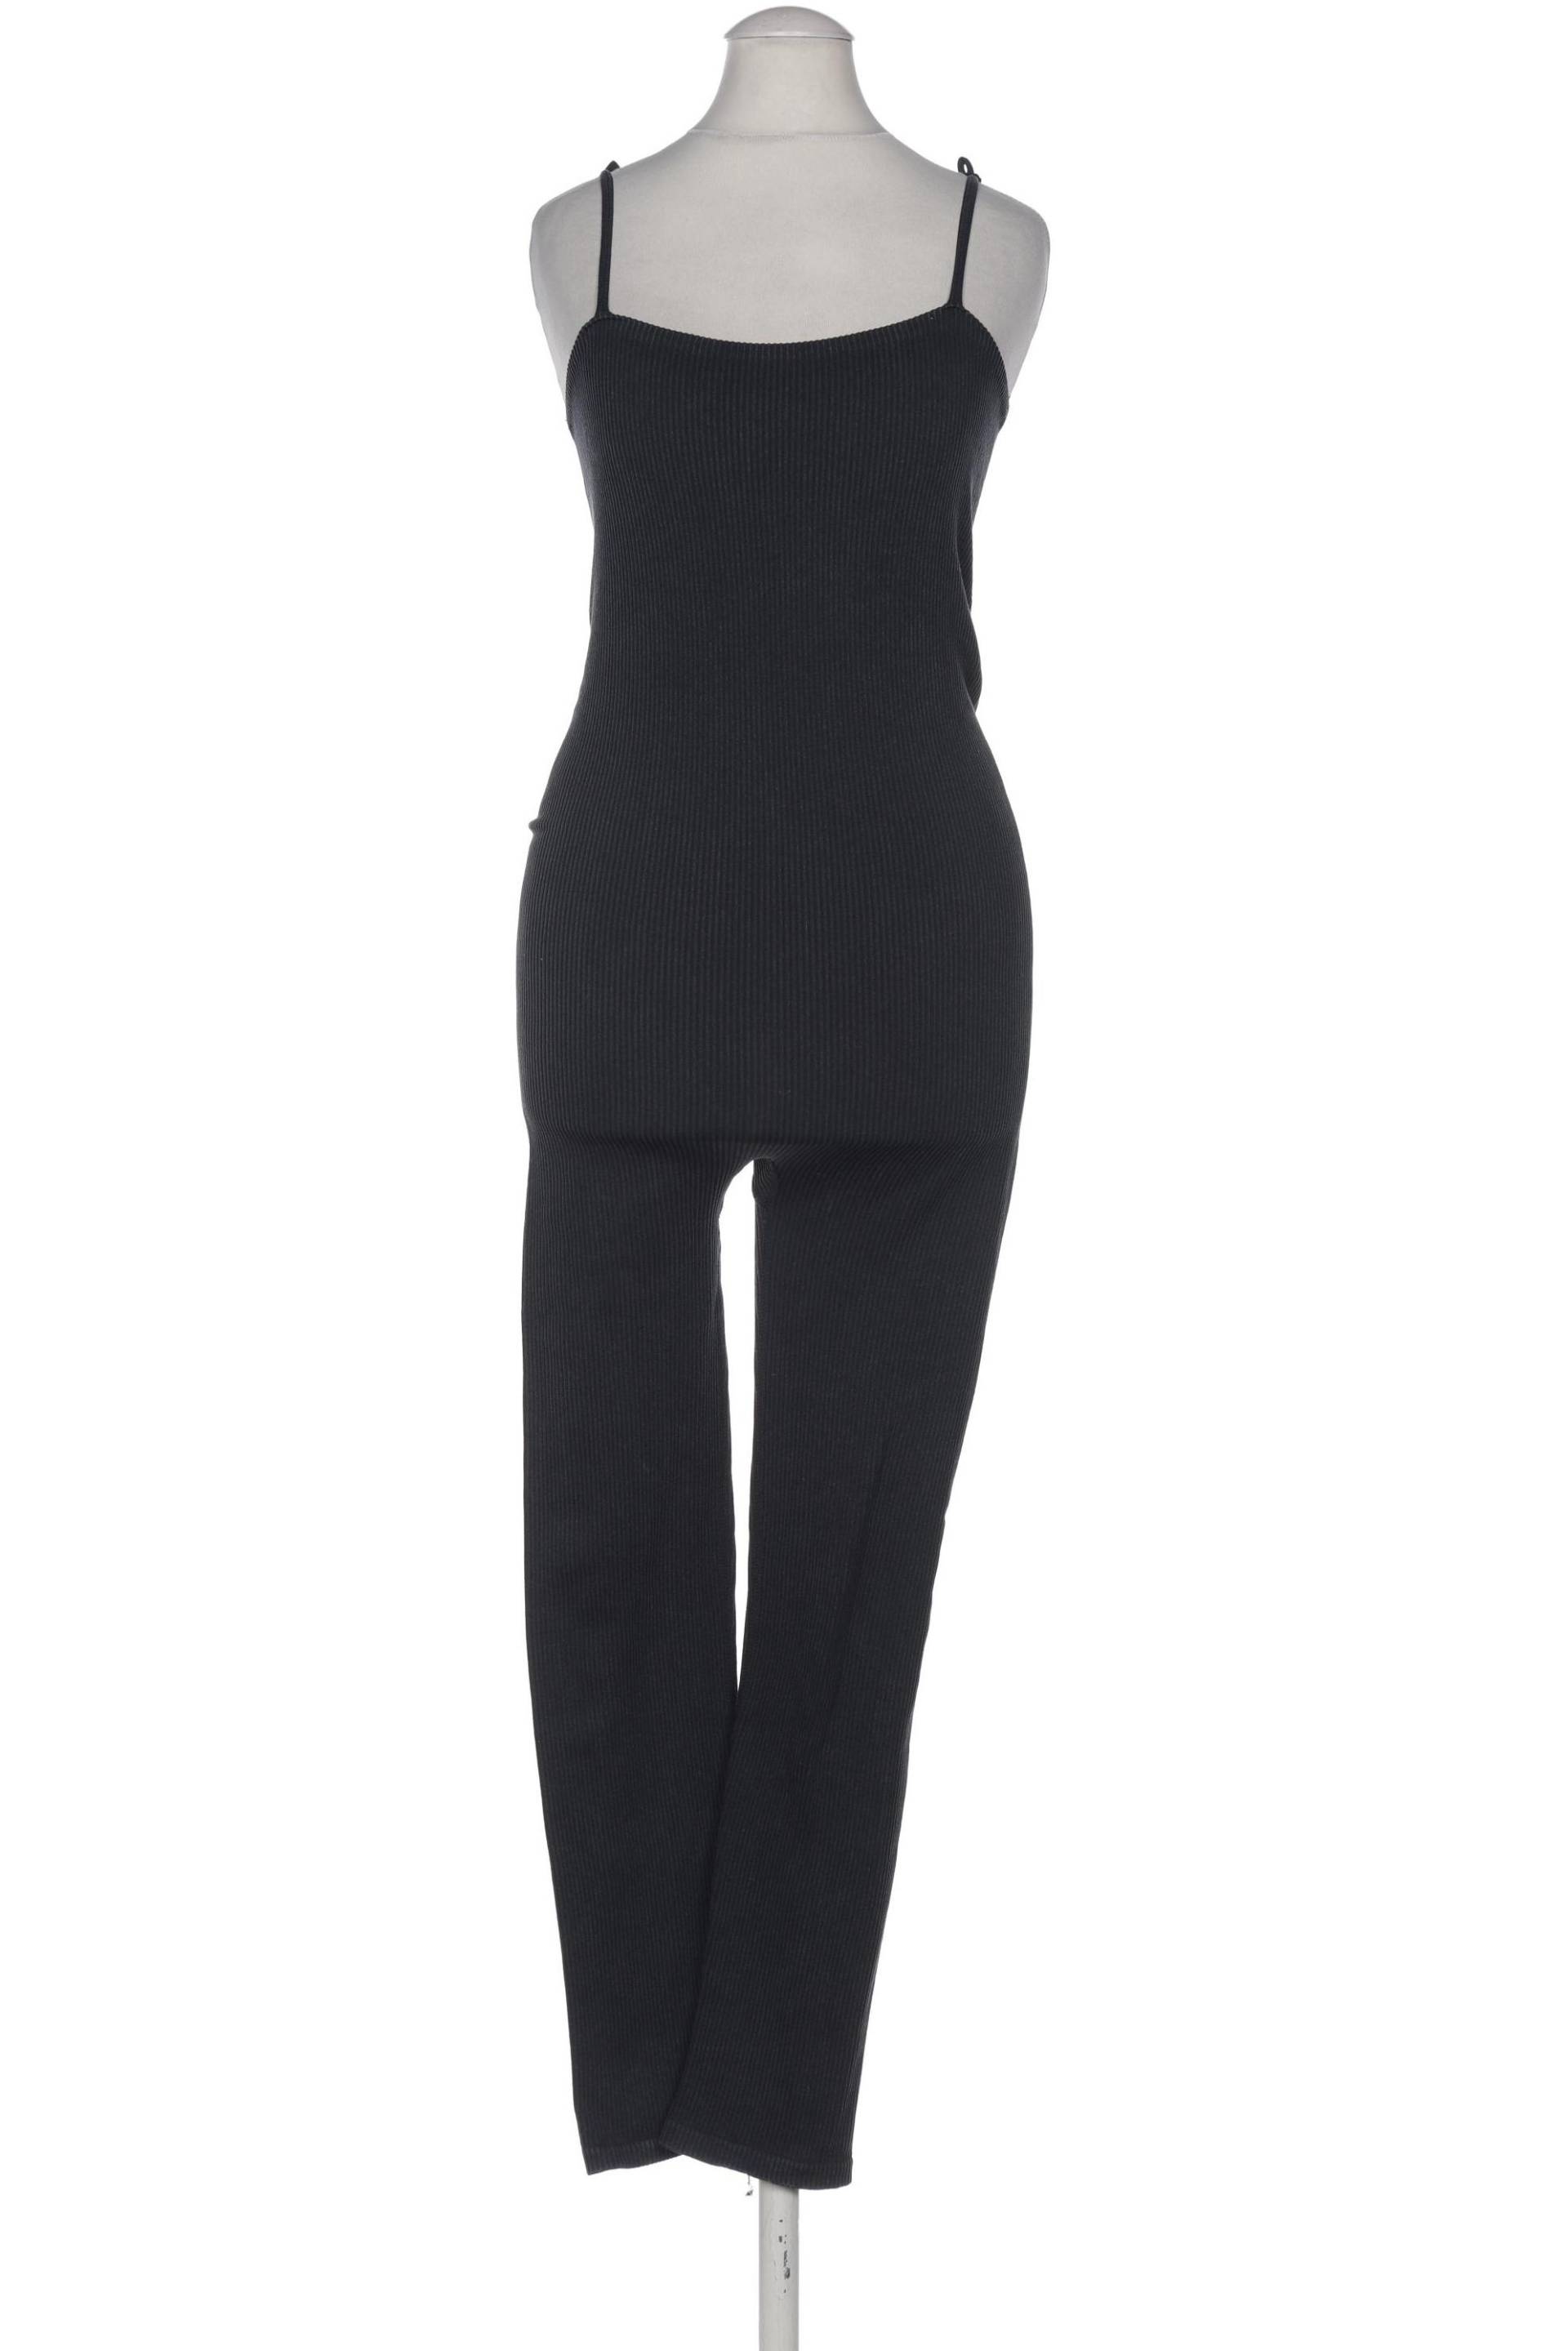 Zara Damen Jumpsuit/Overall, marineblau, Gr. 38 von ZARA